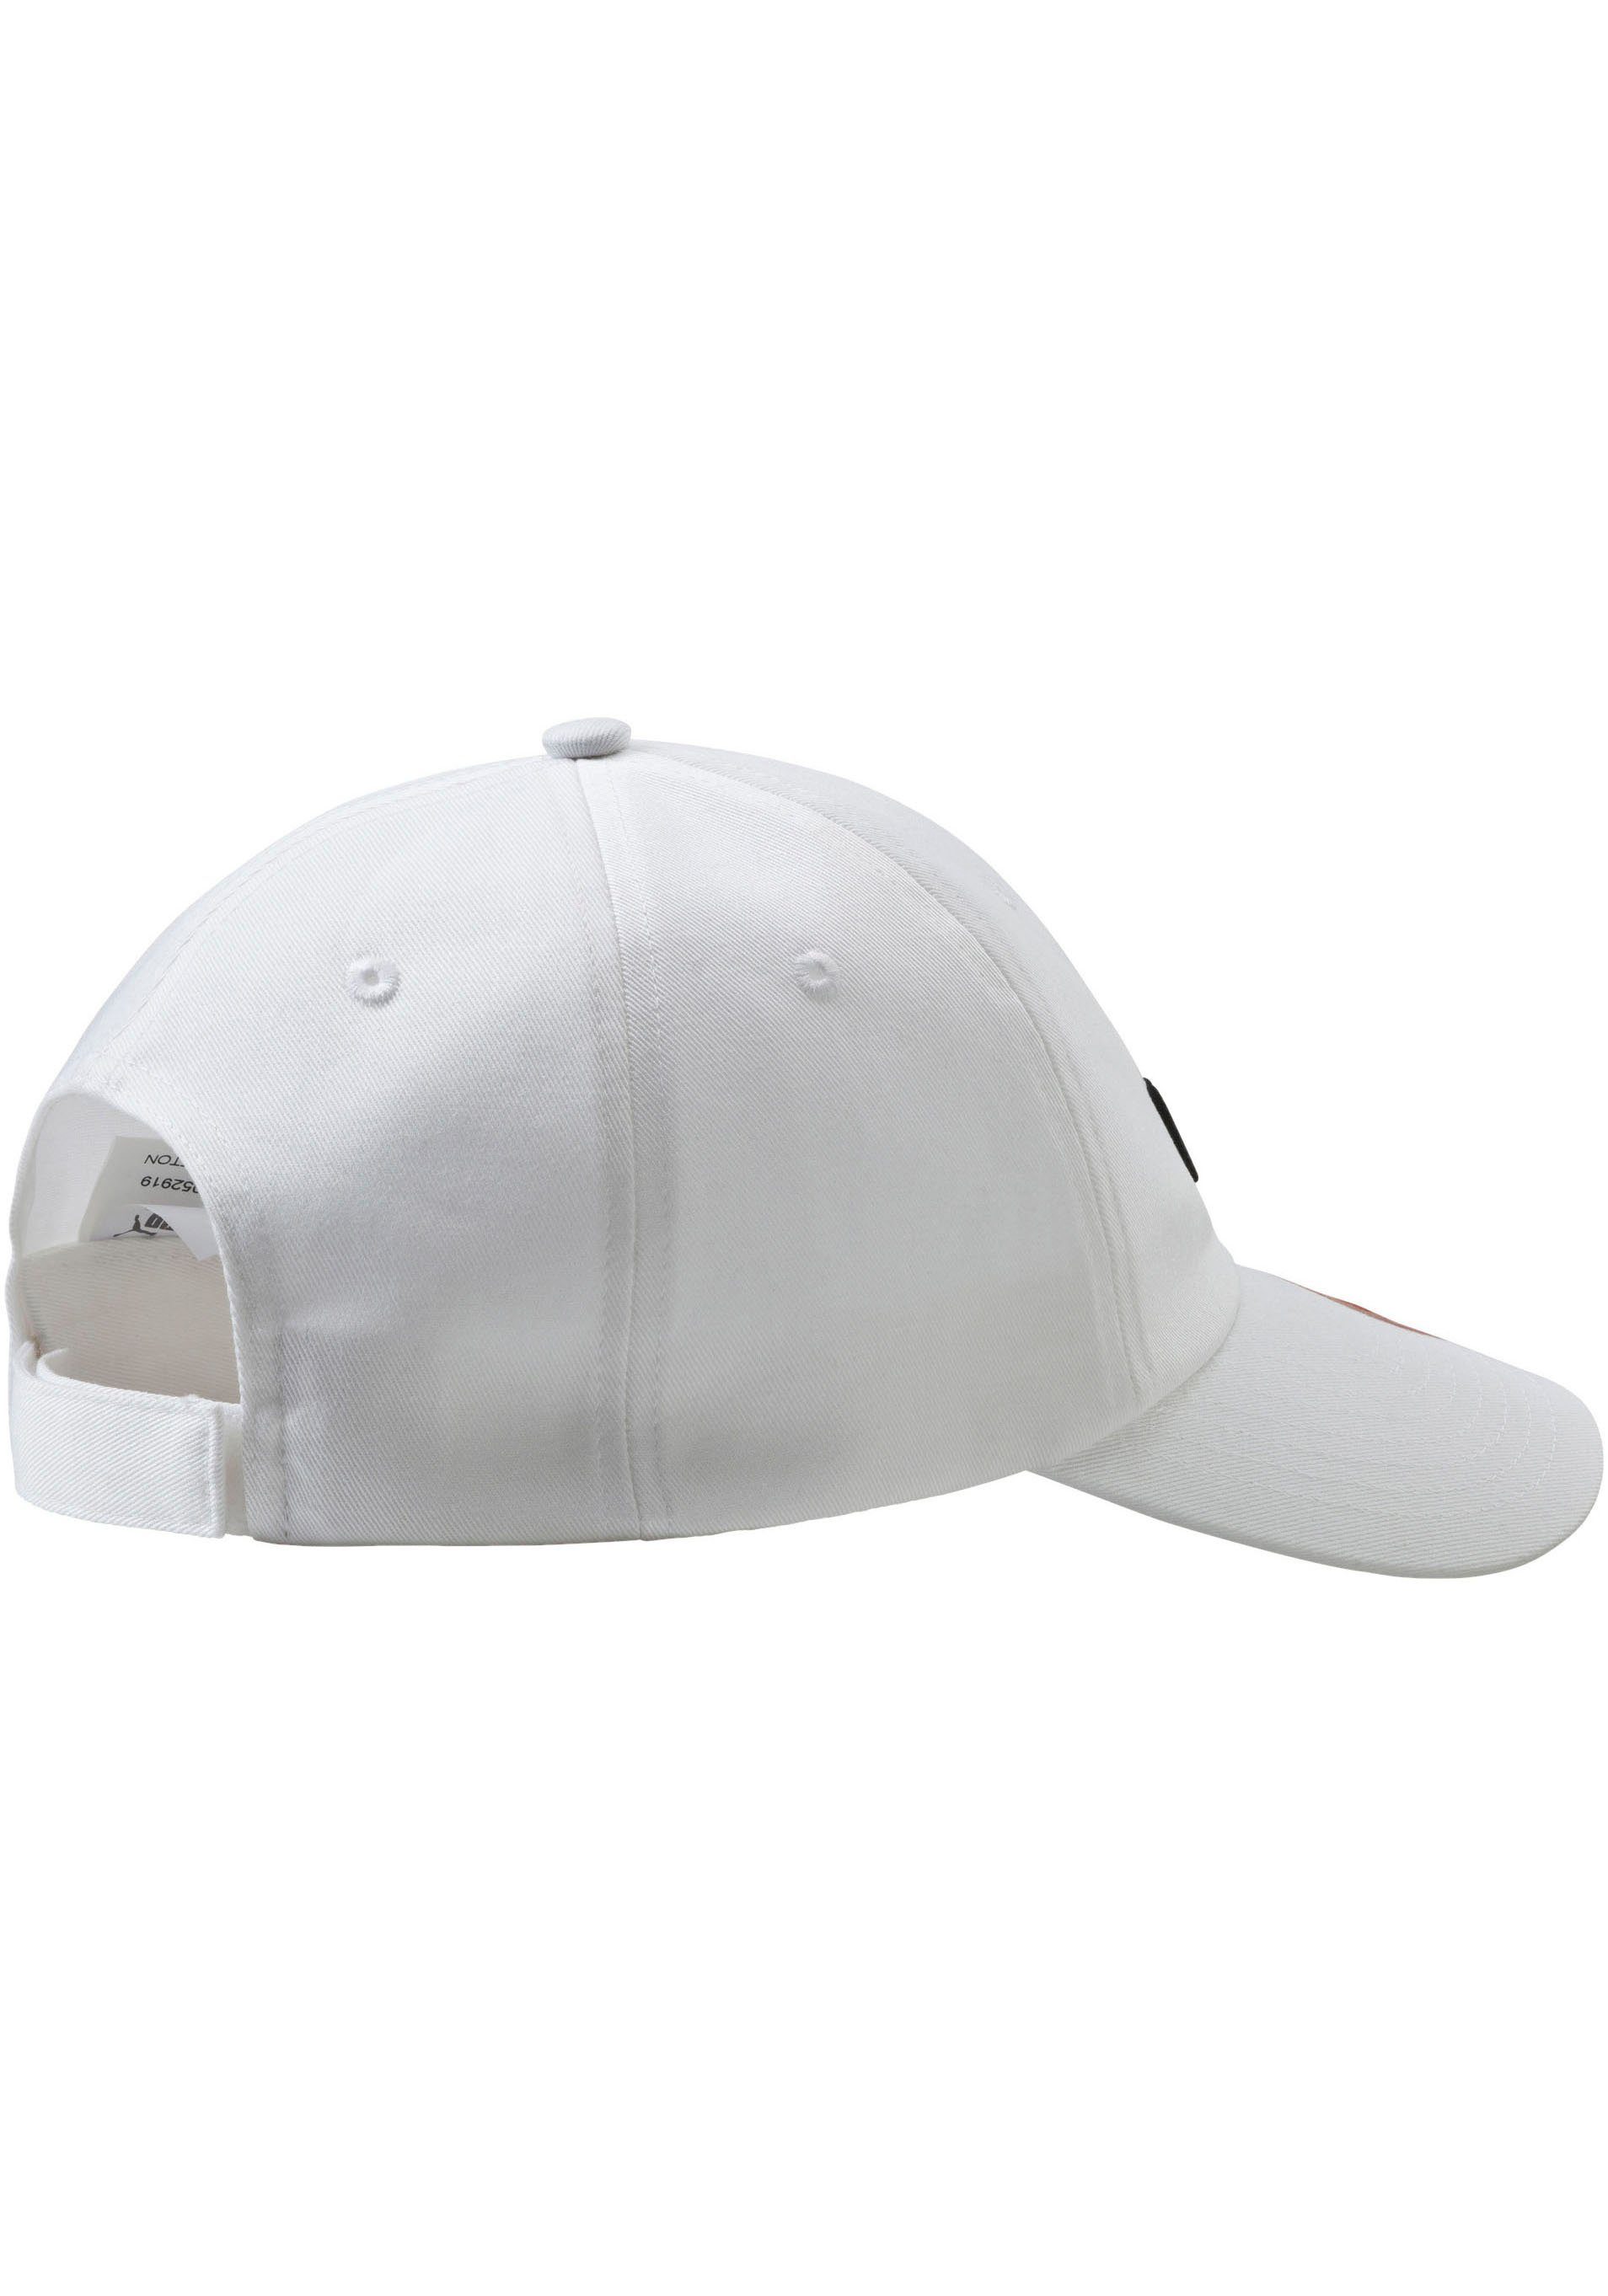 Baseball CAP PUMA white-No,1 Cap ESS